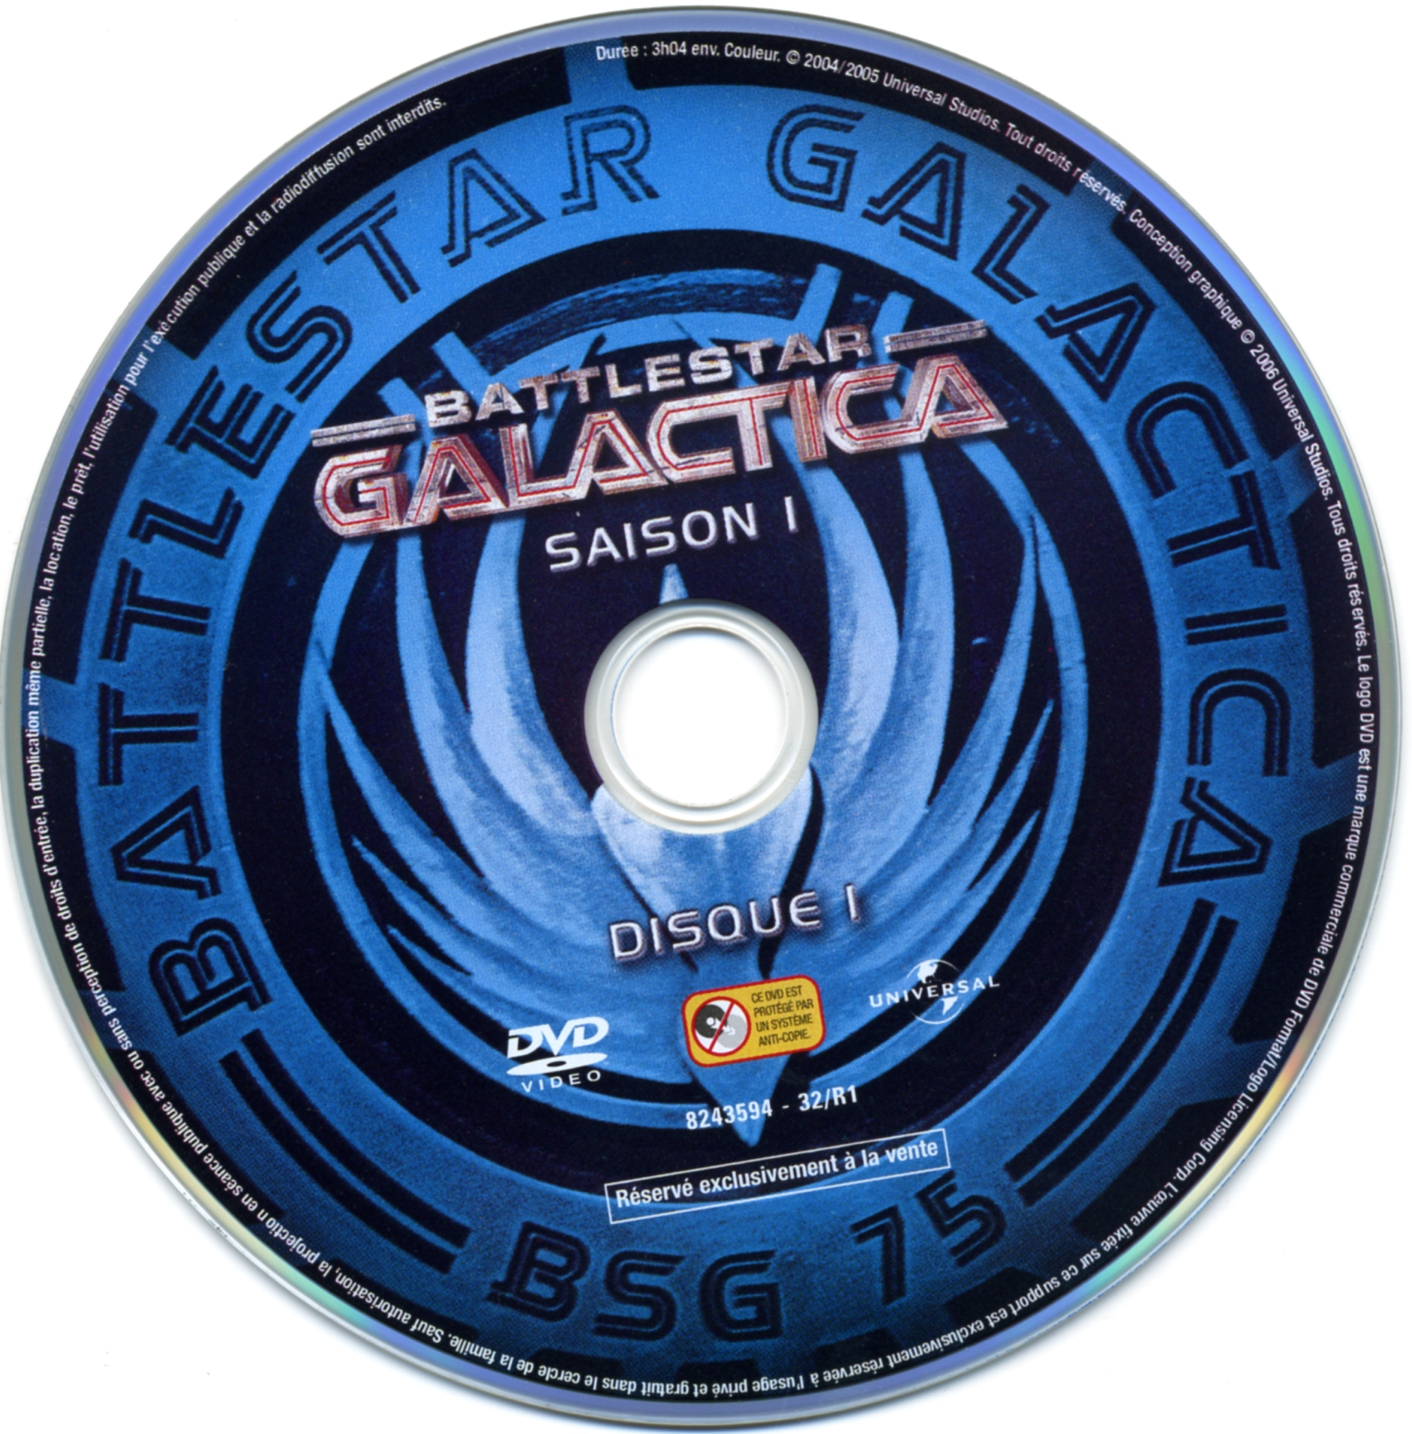 Galactica saison 1 vol 1